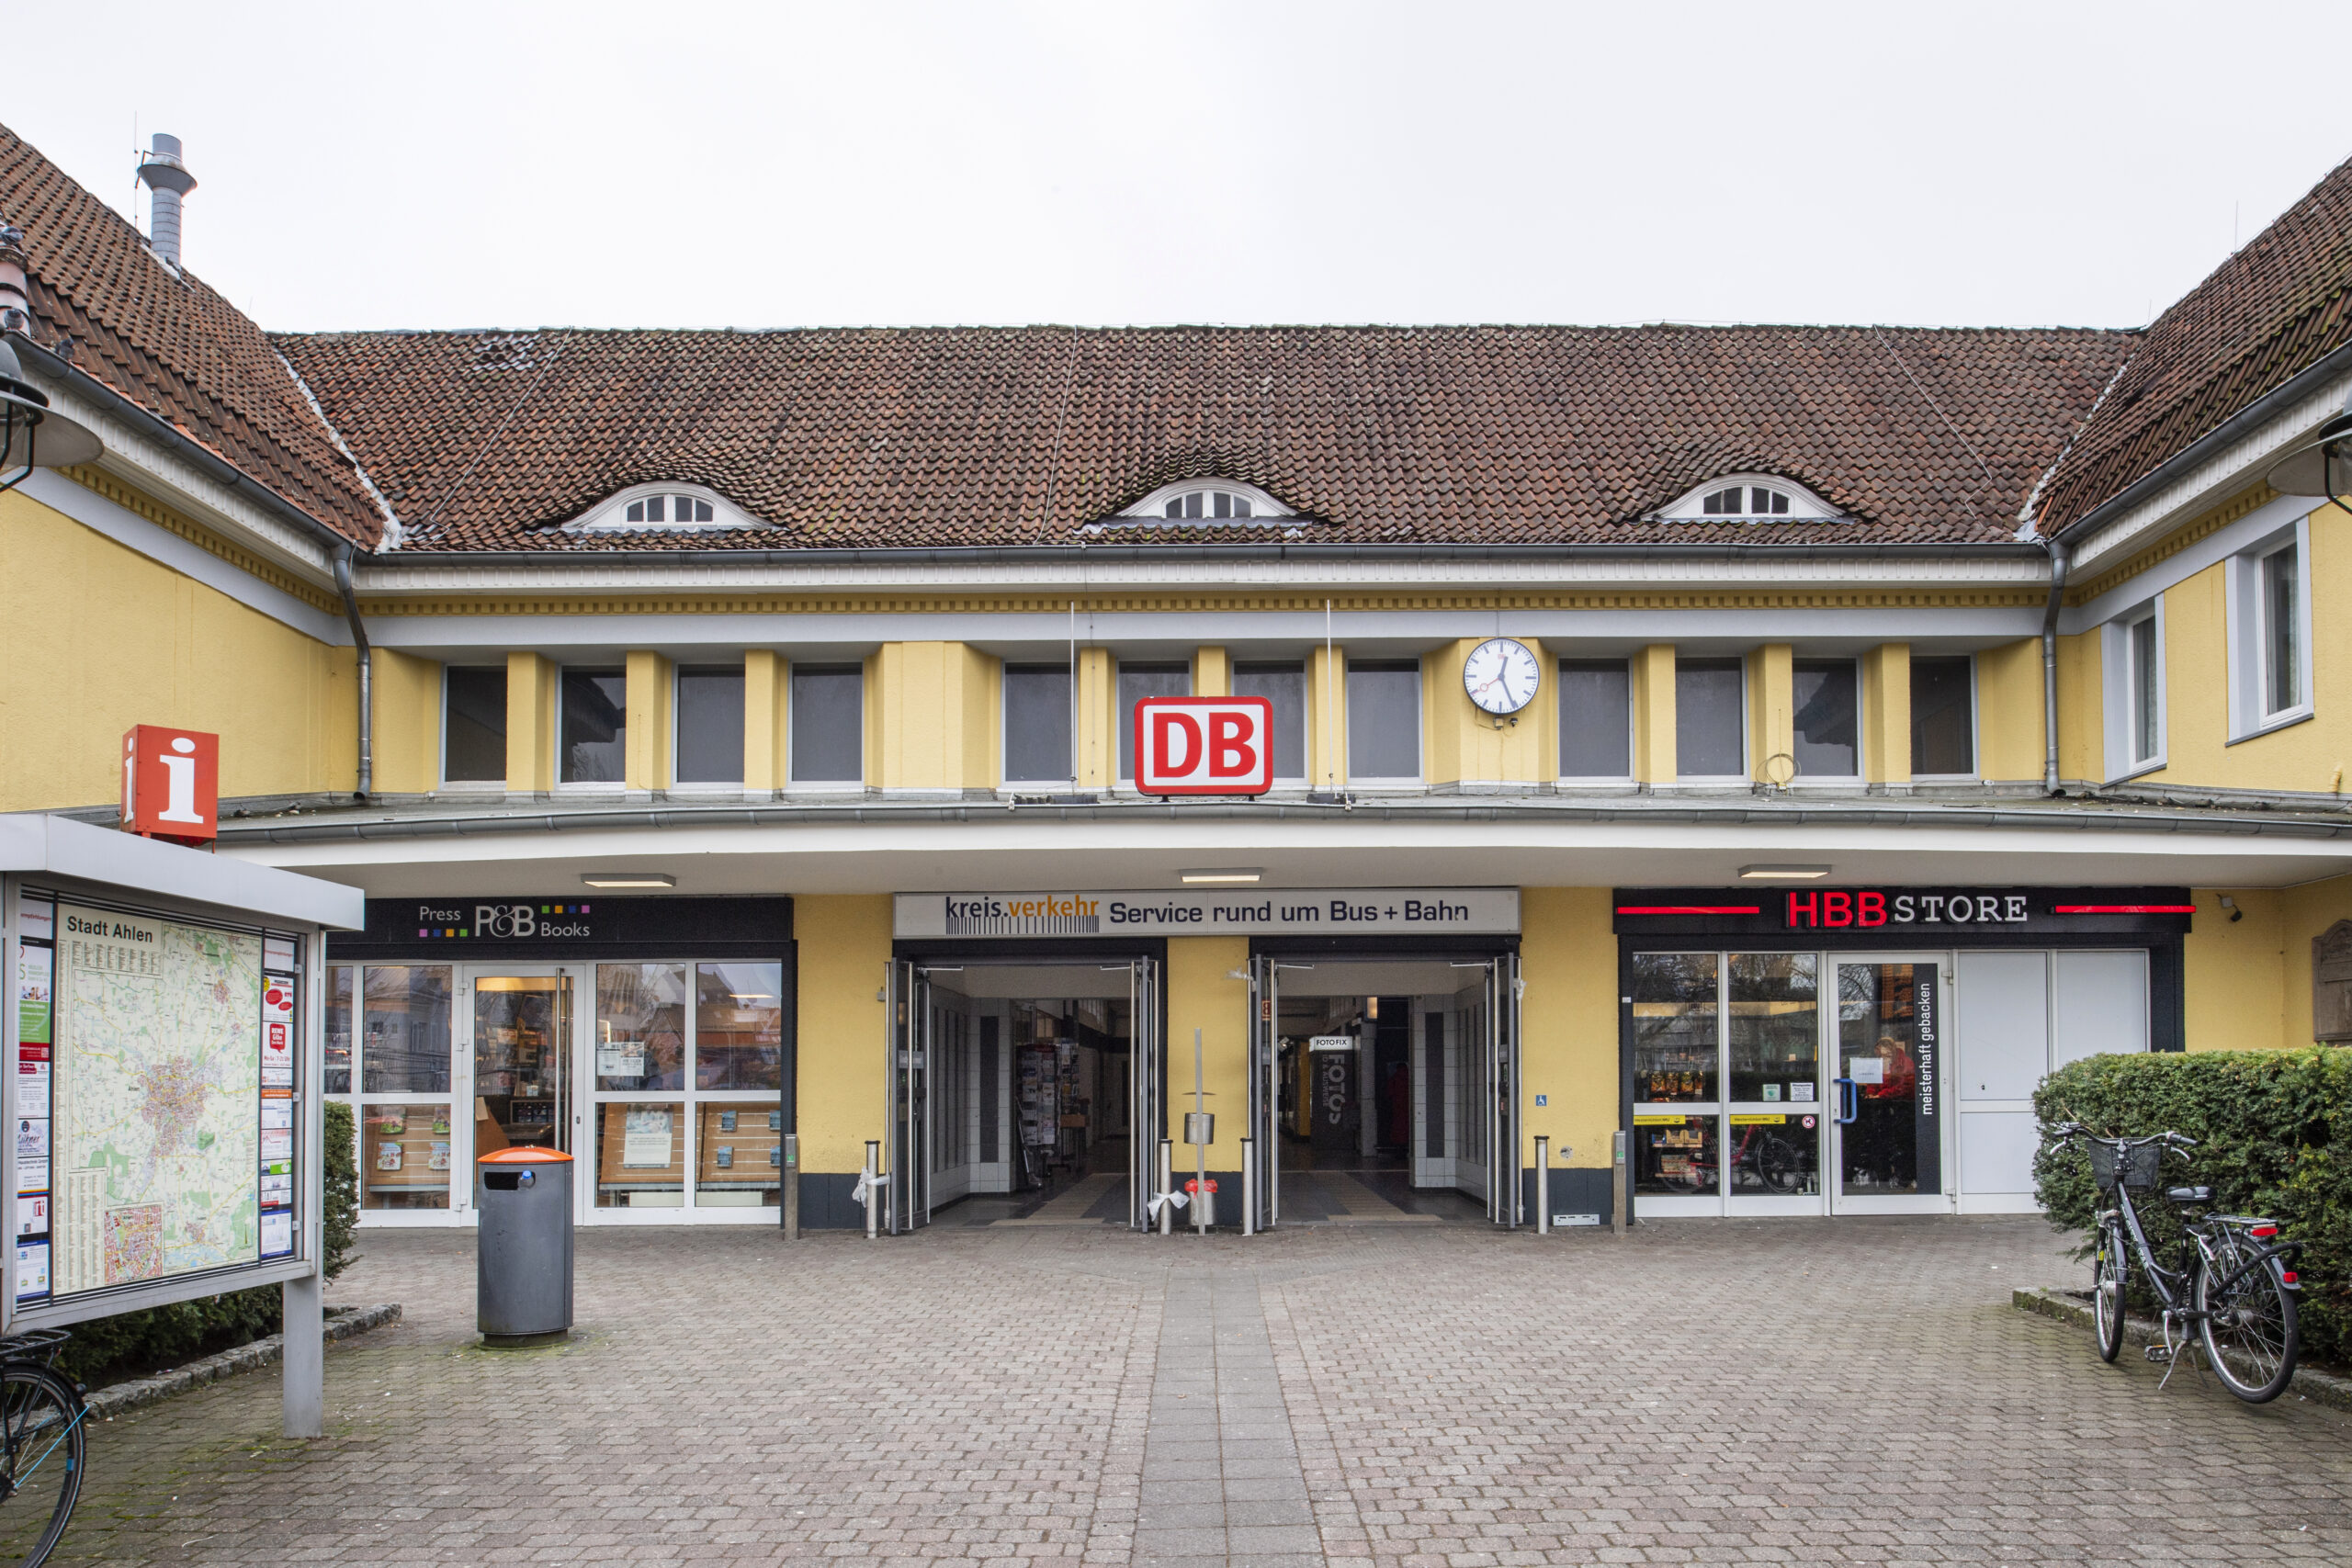 Schöner ankommen in NRW: Bahnhof Ahlen - Eingang